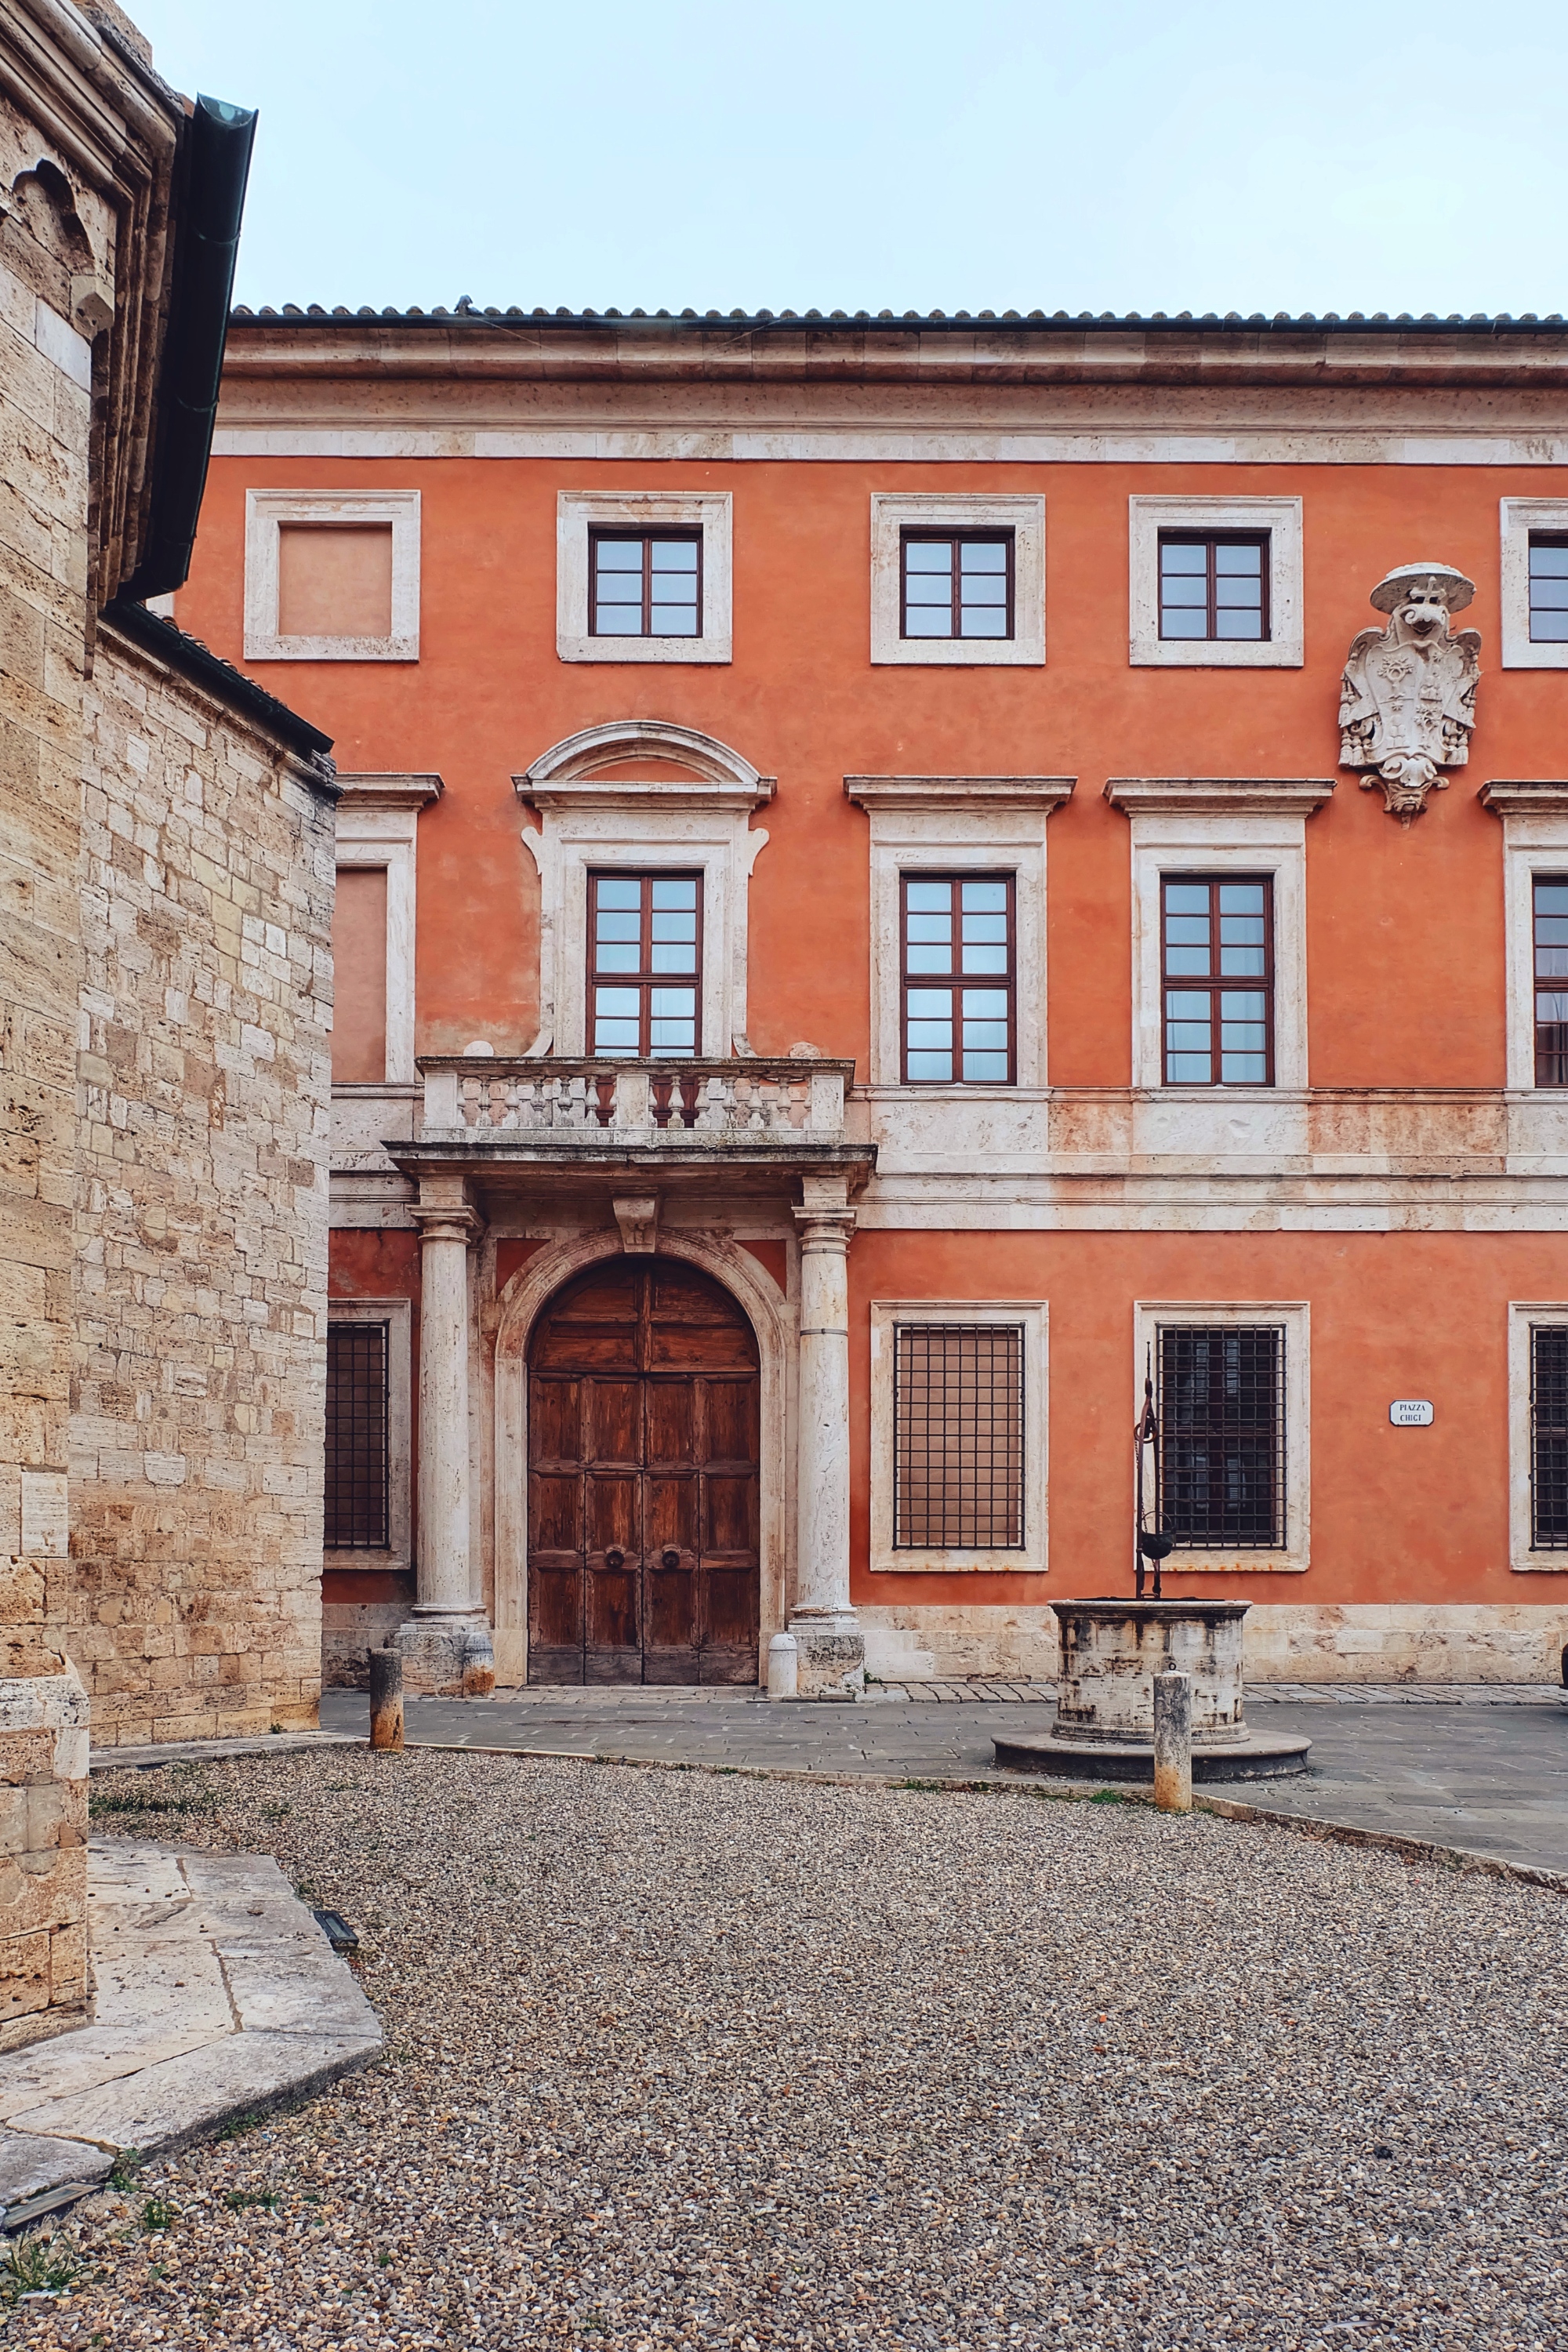 Palazzo Chigi Zondadari in San Quirico d'Orcia